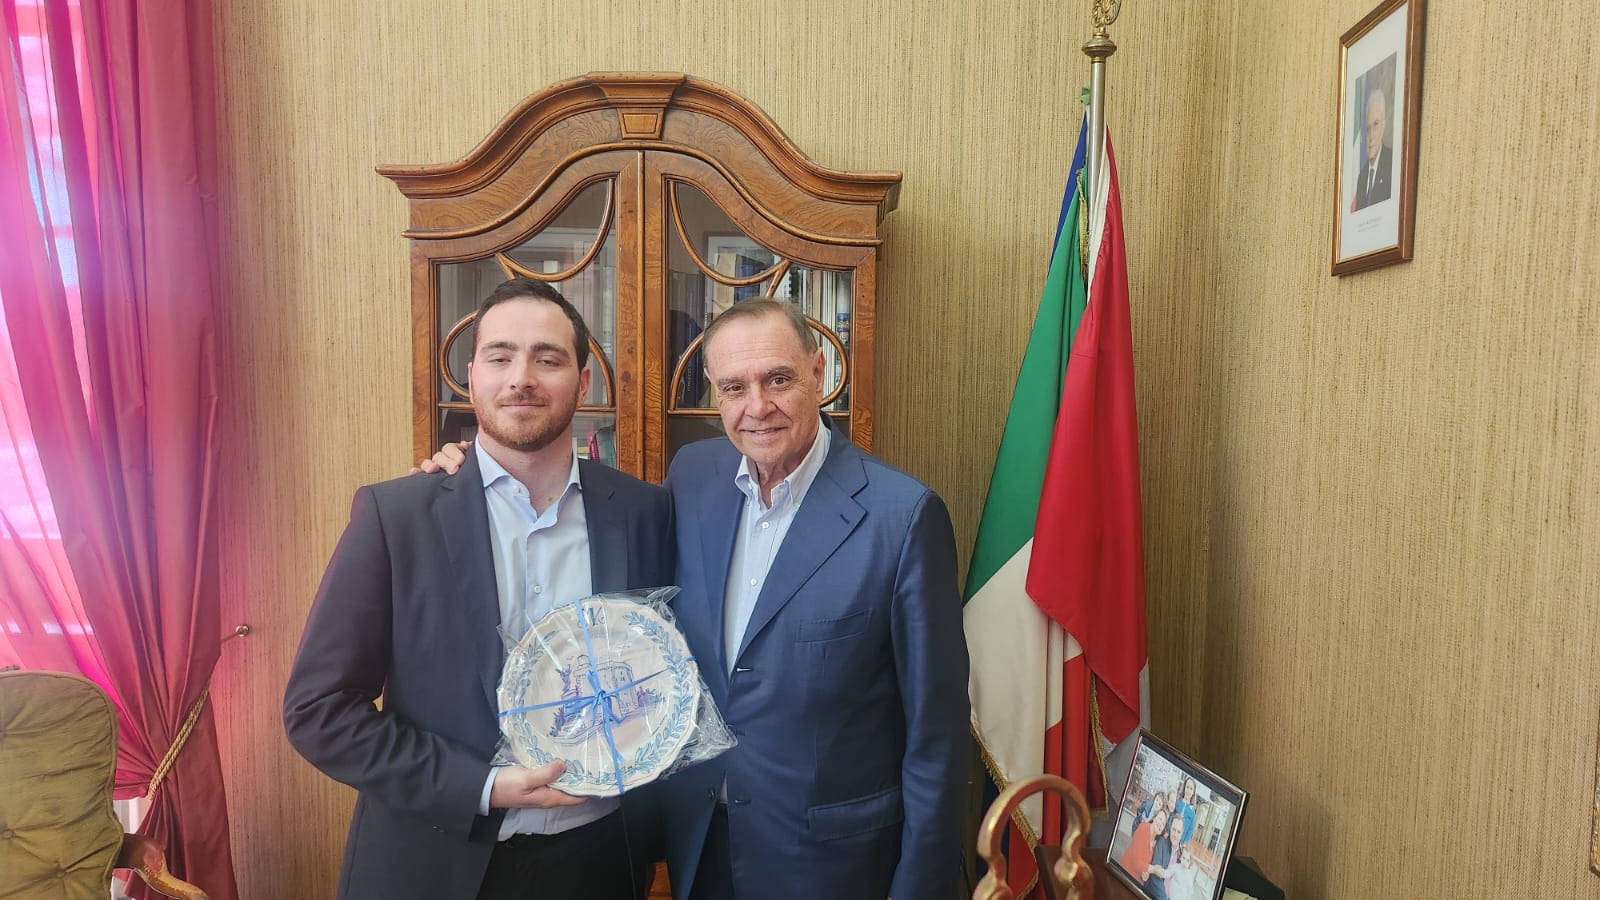 Il sindaco Mastella ha ricevuto un piatto celebrativo dal presidente dell’associazione Res Publica Pierpaolo Izzo